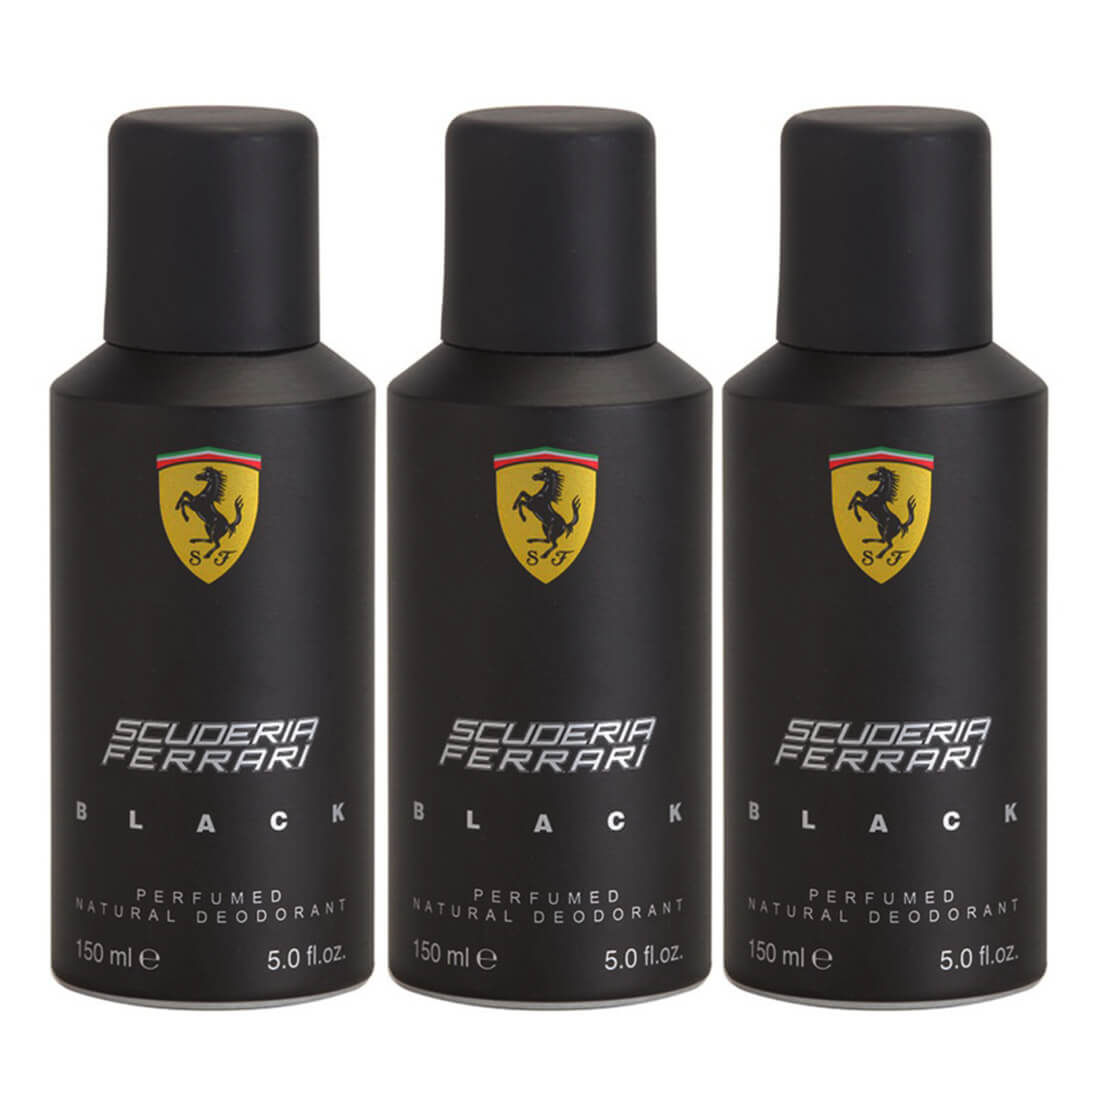 Ferrari Scuderia Black Deodorant Pack Of 3 - 150ml